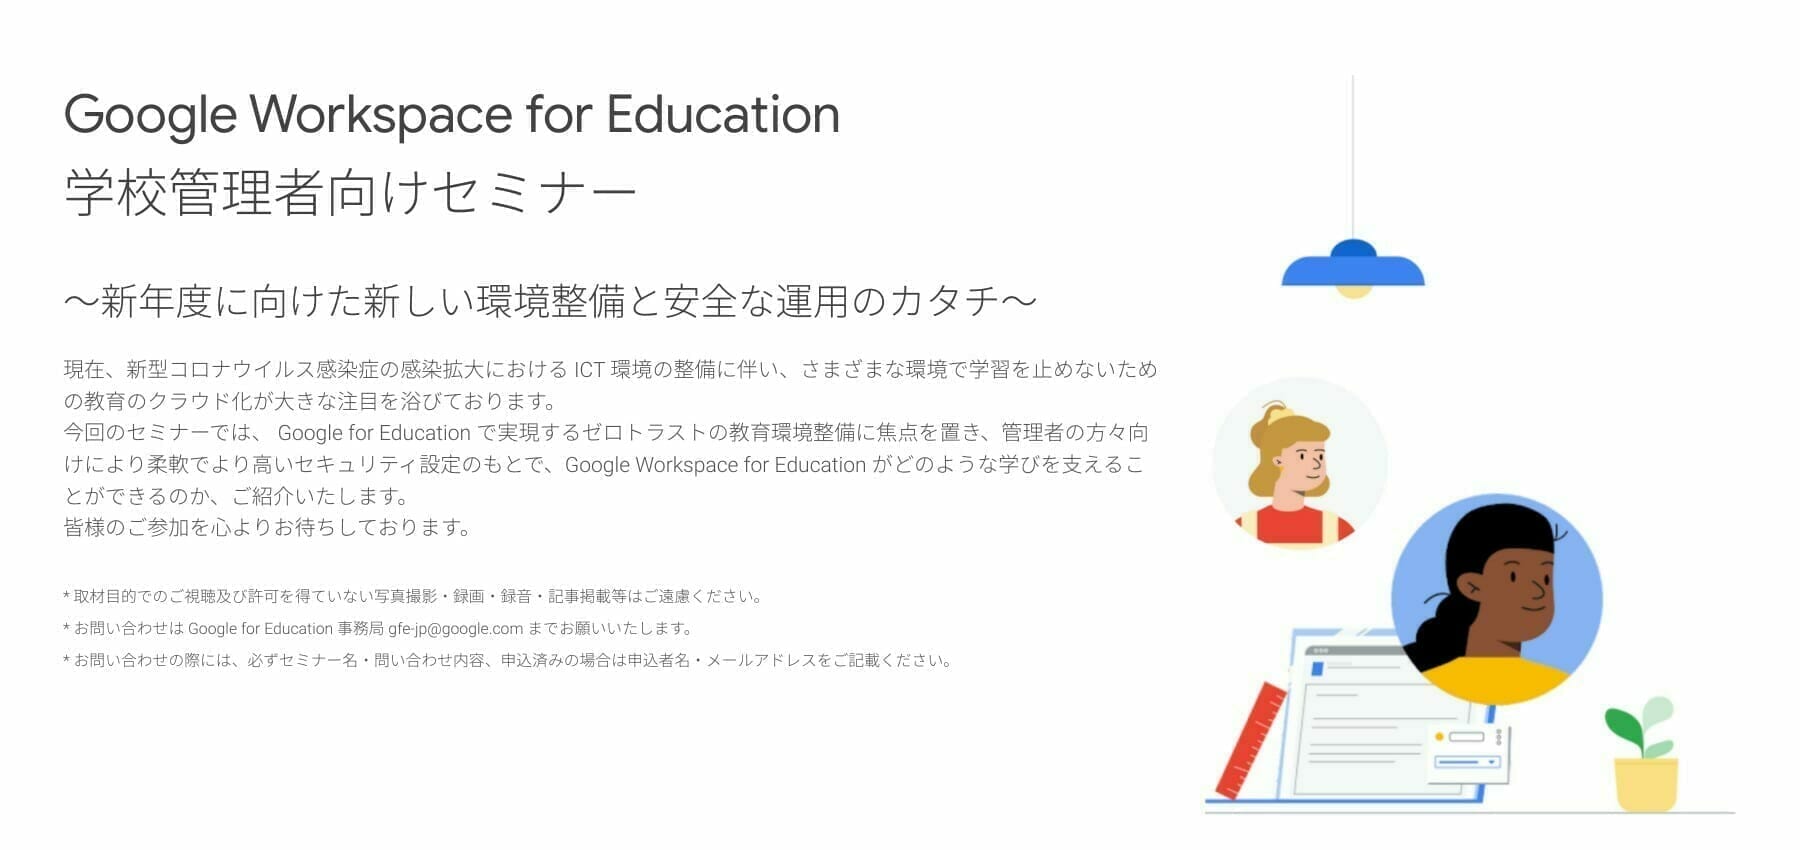 [Google for Education] Google Workspace for Education 学校管理者向けセミナー 〜新年度に向けた新しい環境整備と安全な運用のカタチ〜